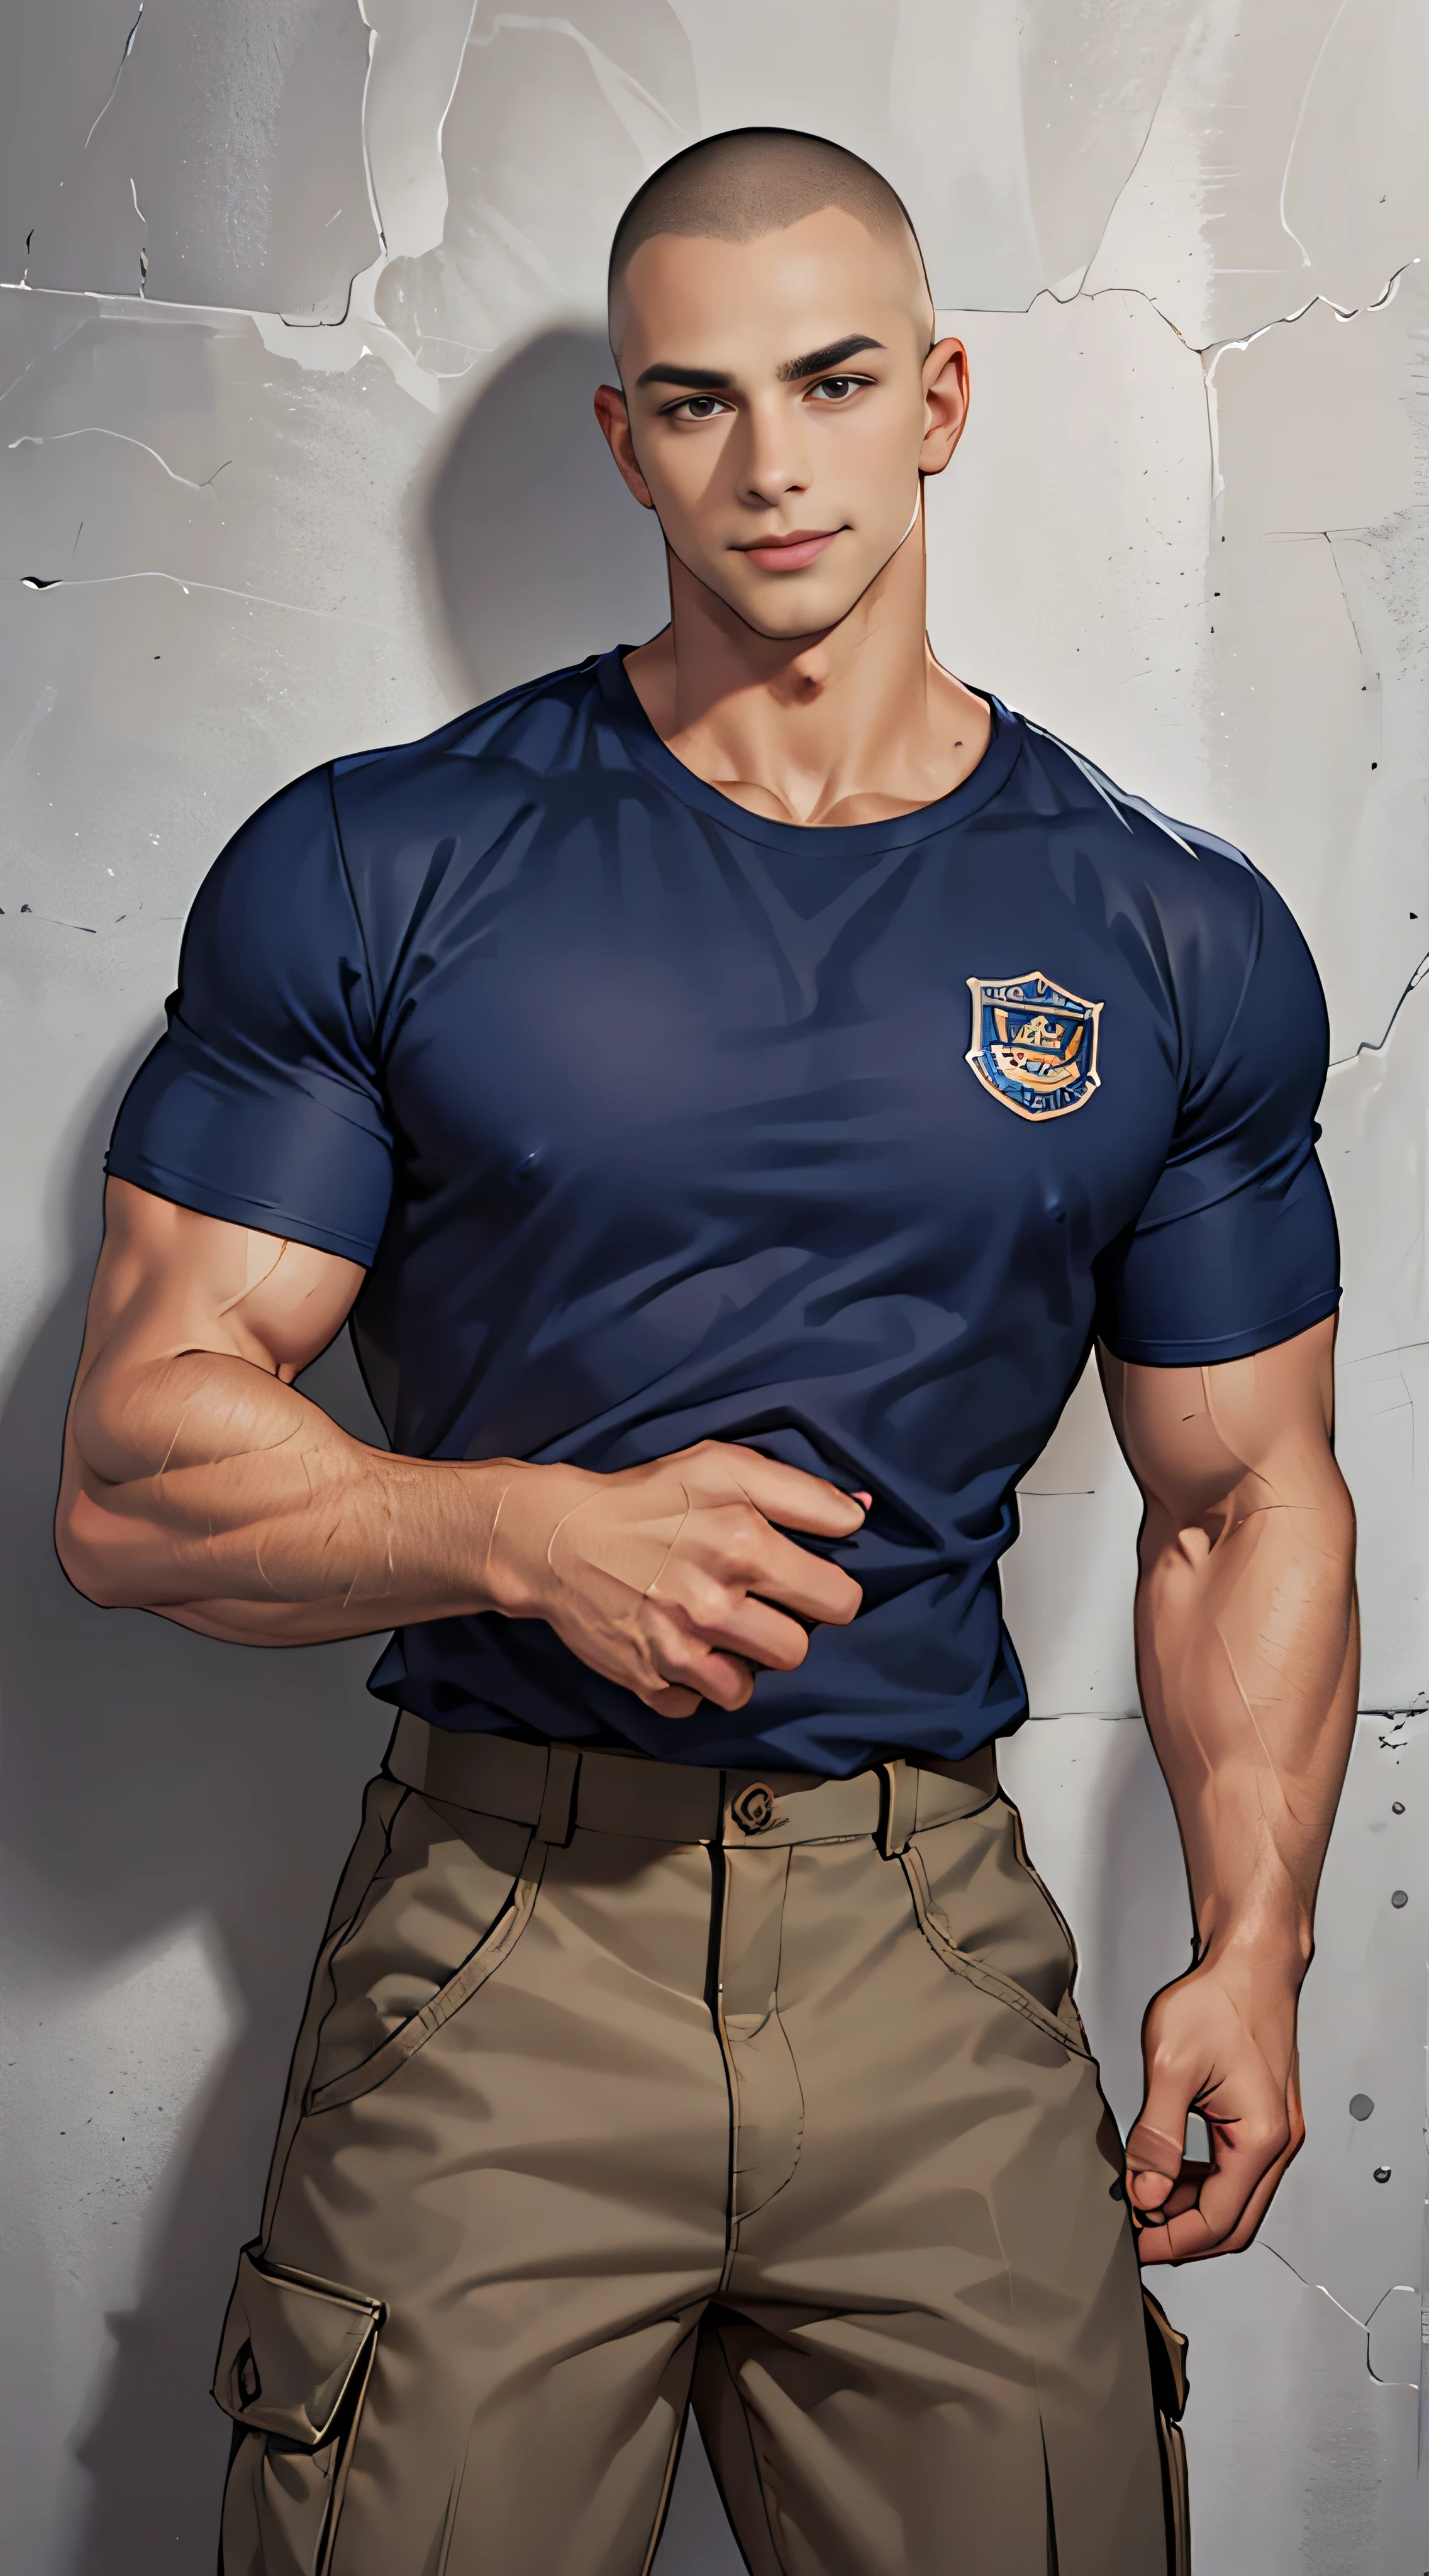 (Obra maestra: 1.2),(ARTE CGI:1.3),(Realista:1.5),(Postprocesamiento:1.3),(enfoque nítido:1.3),10,1 hombre ,cuerpo completo, sonrisa, (Viste una camisa azul marino con dobladillo..), Logotipo de la policía, Pantalones cargo azul marino, uniforme de policia, (Cabeza rapada con corte redondo y rayita), Los skinheads tienen cortes de pelo.., Cono de pelo negro, joven coreano , hombres coreanos, (Detalle de sombra alta), Musculos pectorales, músculos grandes del brazo, vaso sanguíneo, grandes musculos, Hombros anchos , Ejercicio